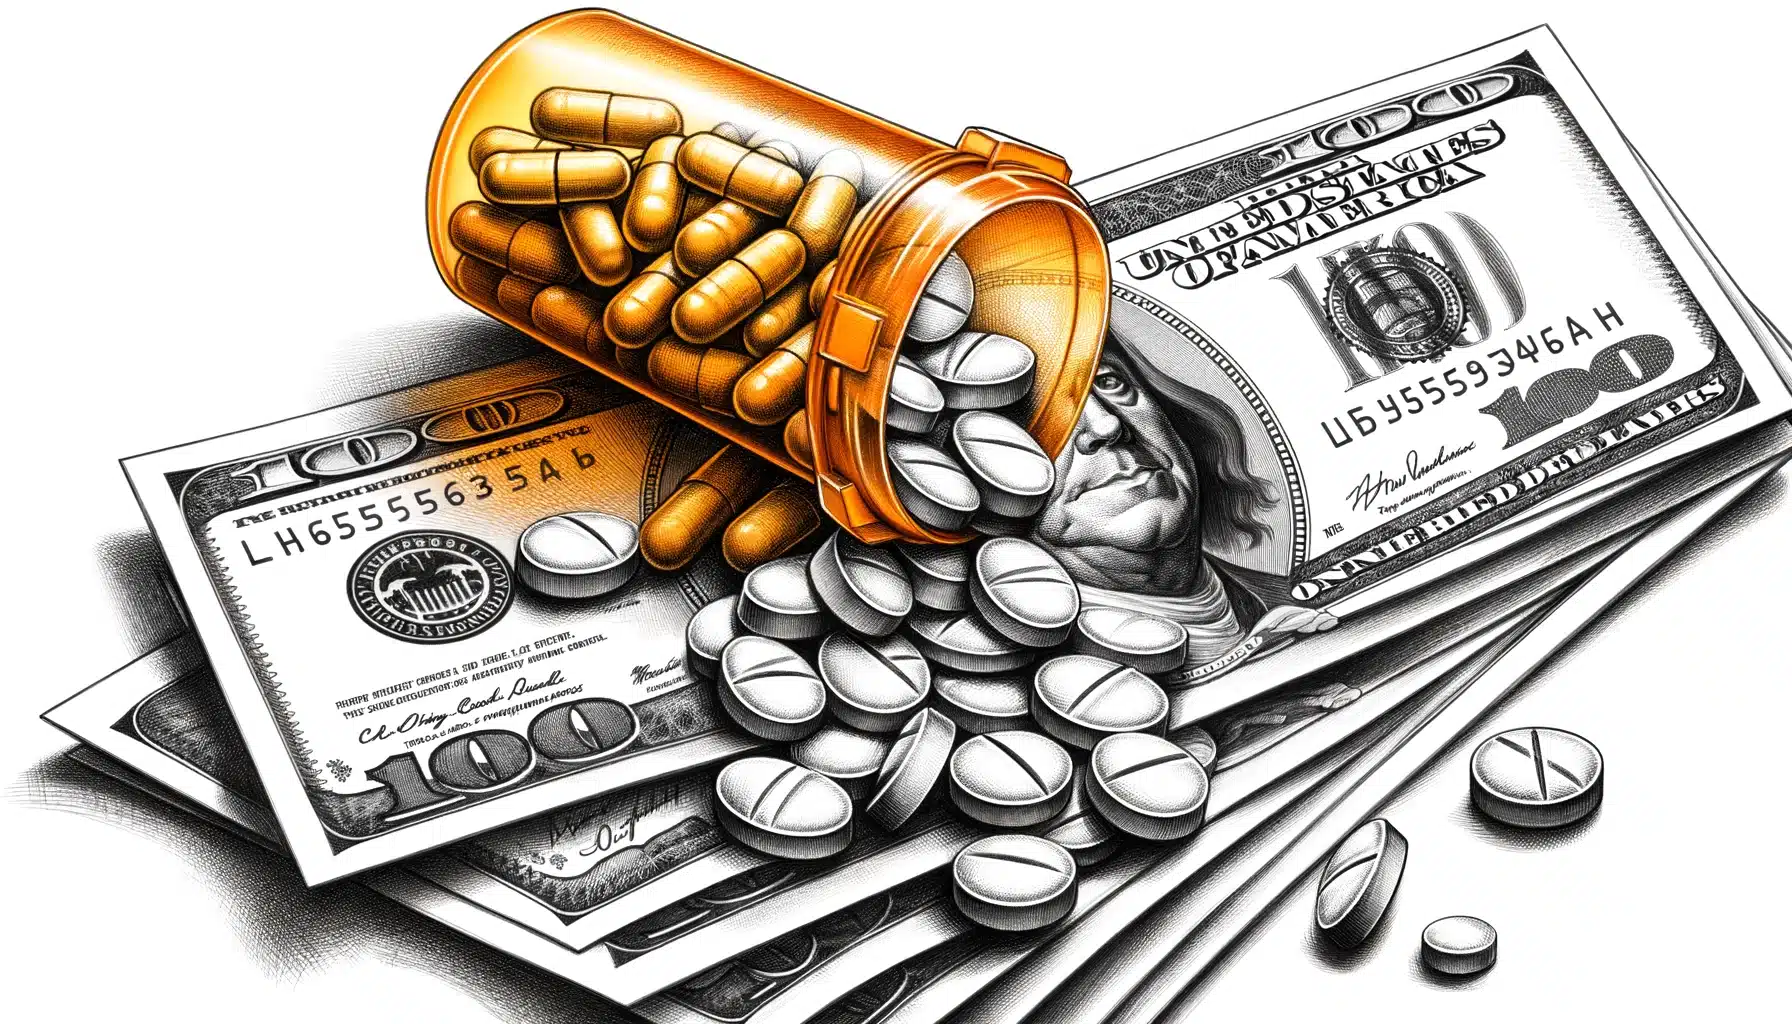 prescription drug offenses in miami florida